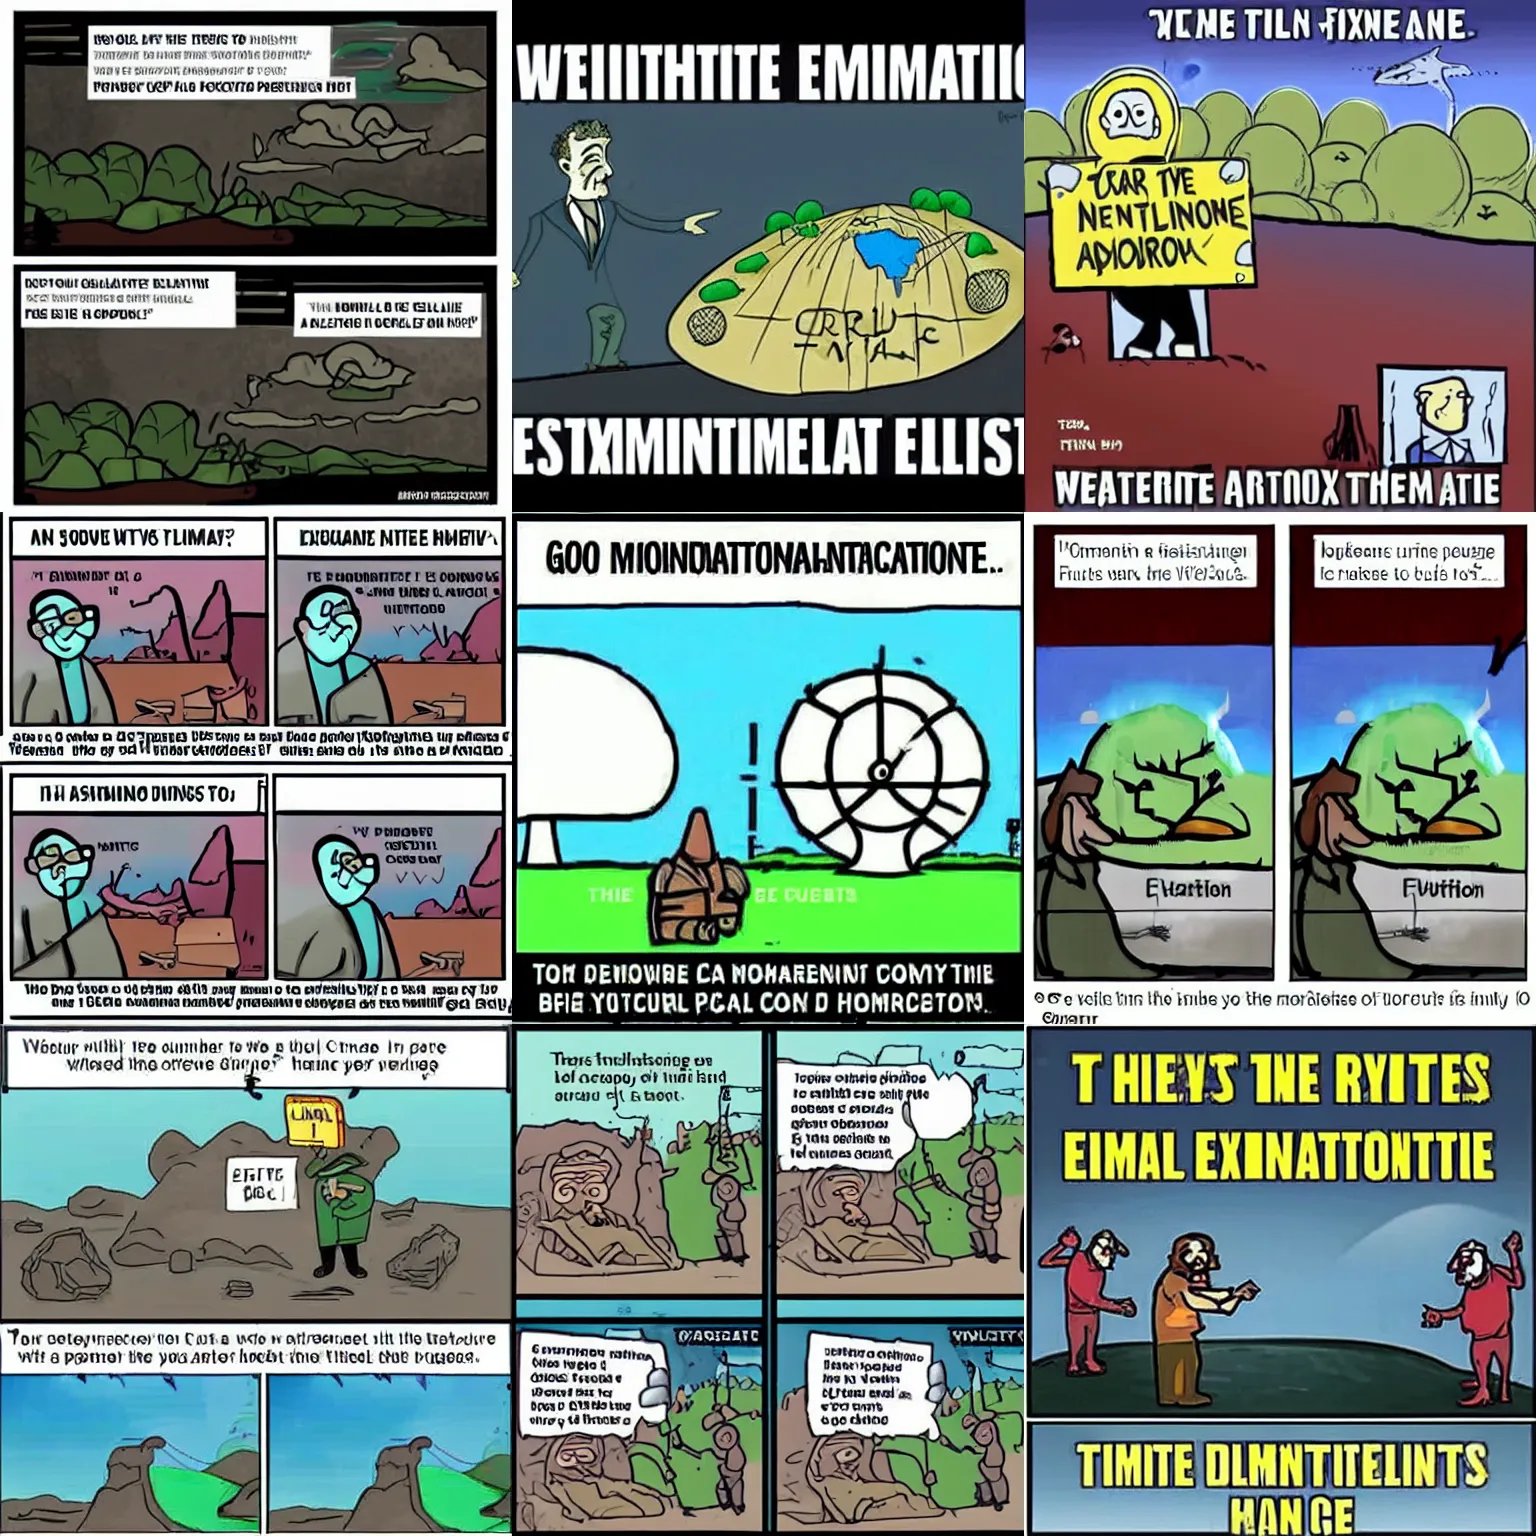 Prompt: a hilarious climate extinction dystopia cartoon meme